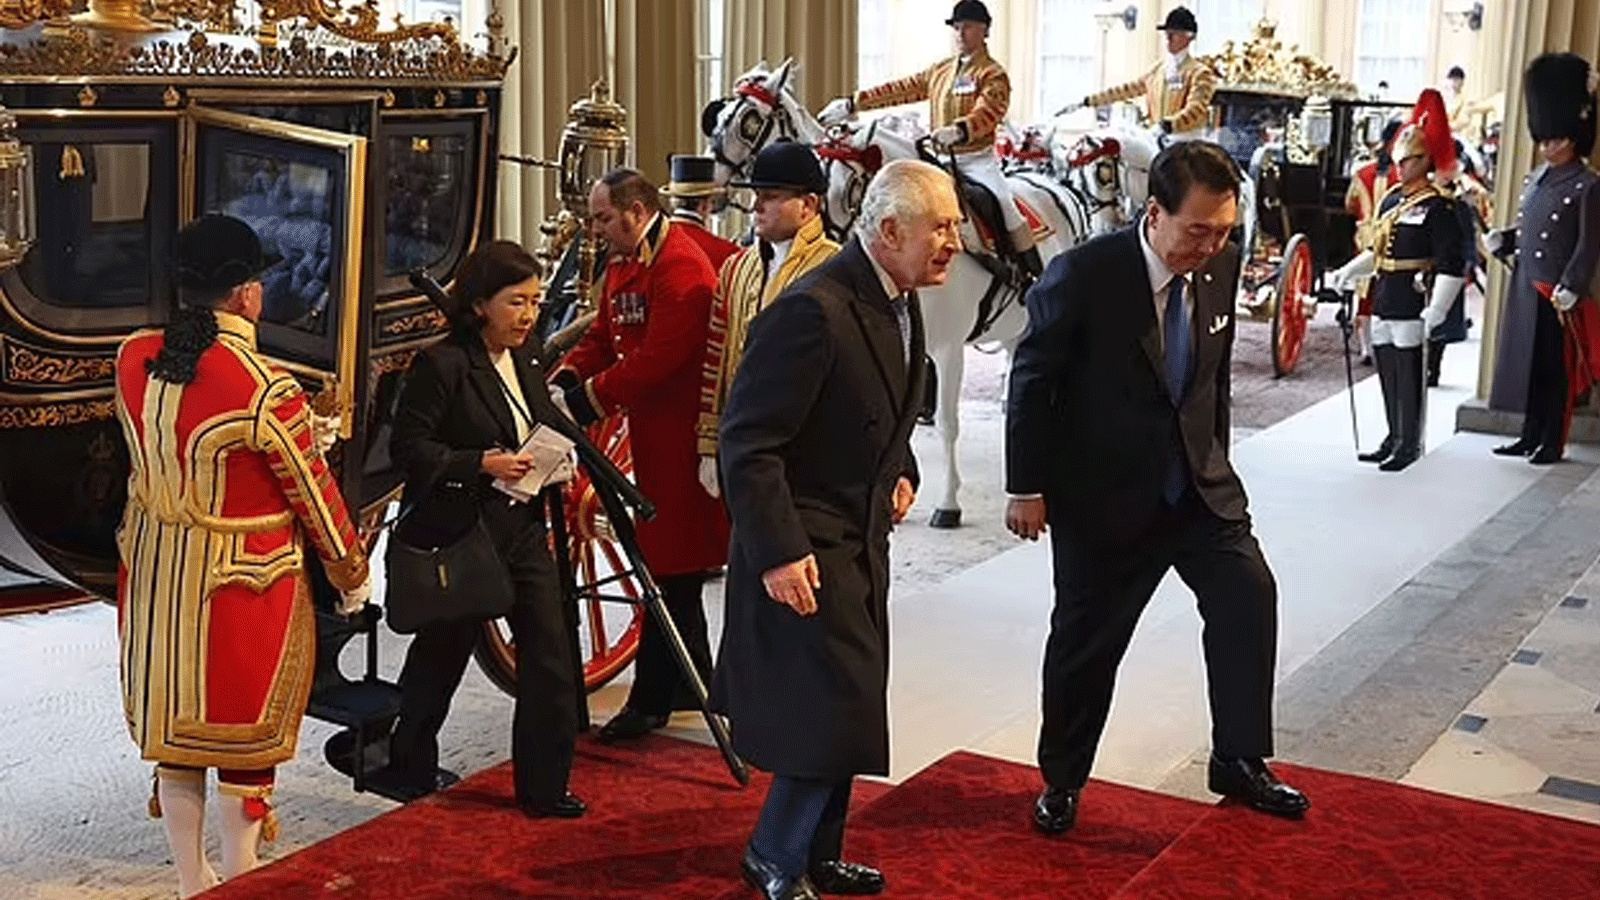 رئيس كوريا الجنوبية يون سوك يول وملك بريطانيا تشارلز الثالث يصلان في العربة الرسمية الاحتفالية إلى قصر باكنغهام في لندن